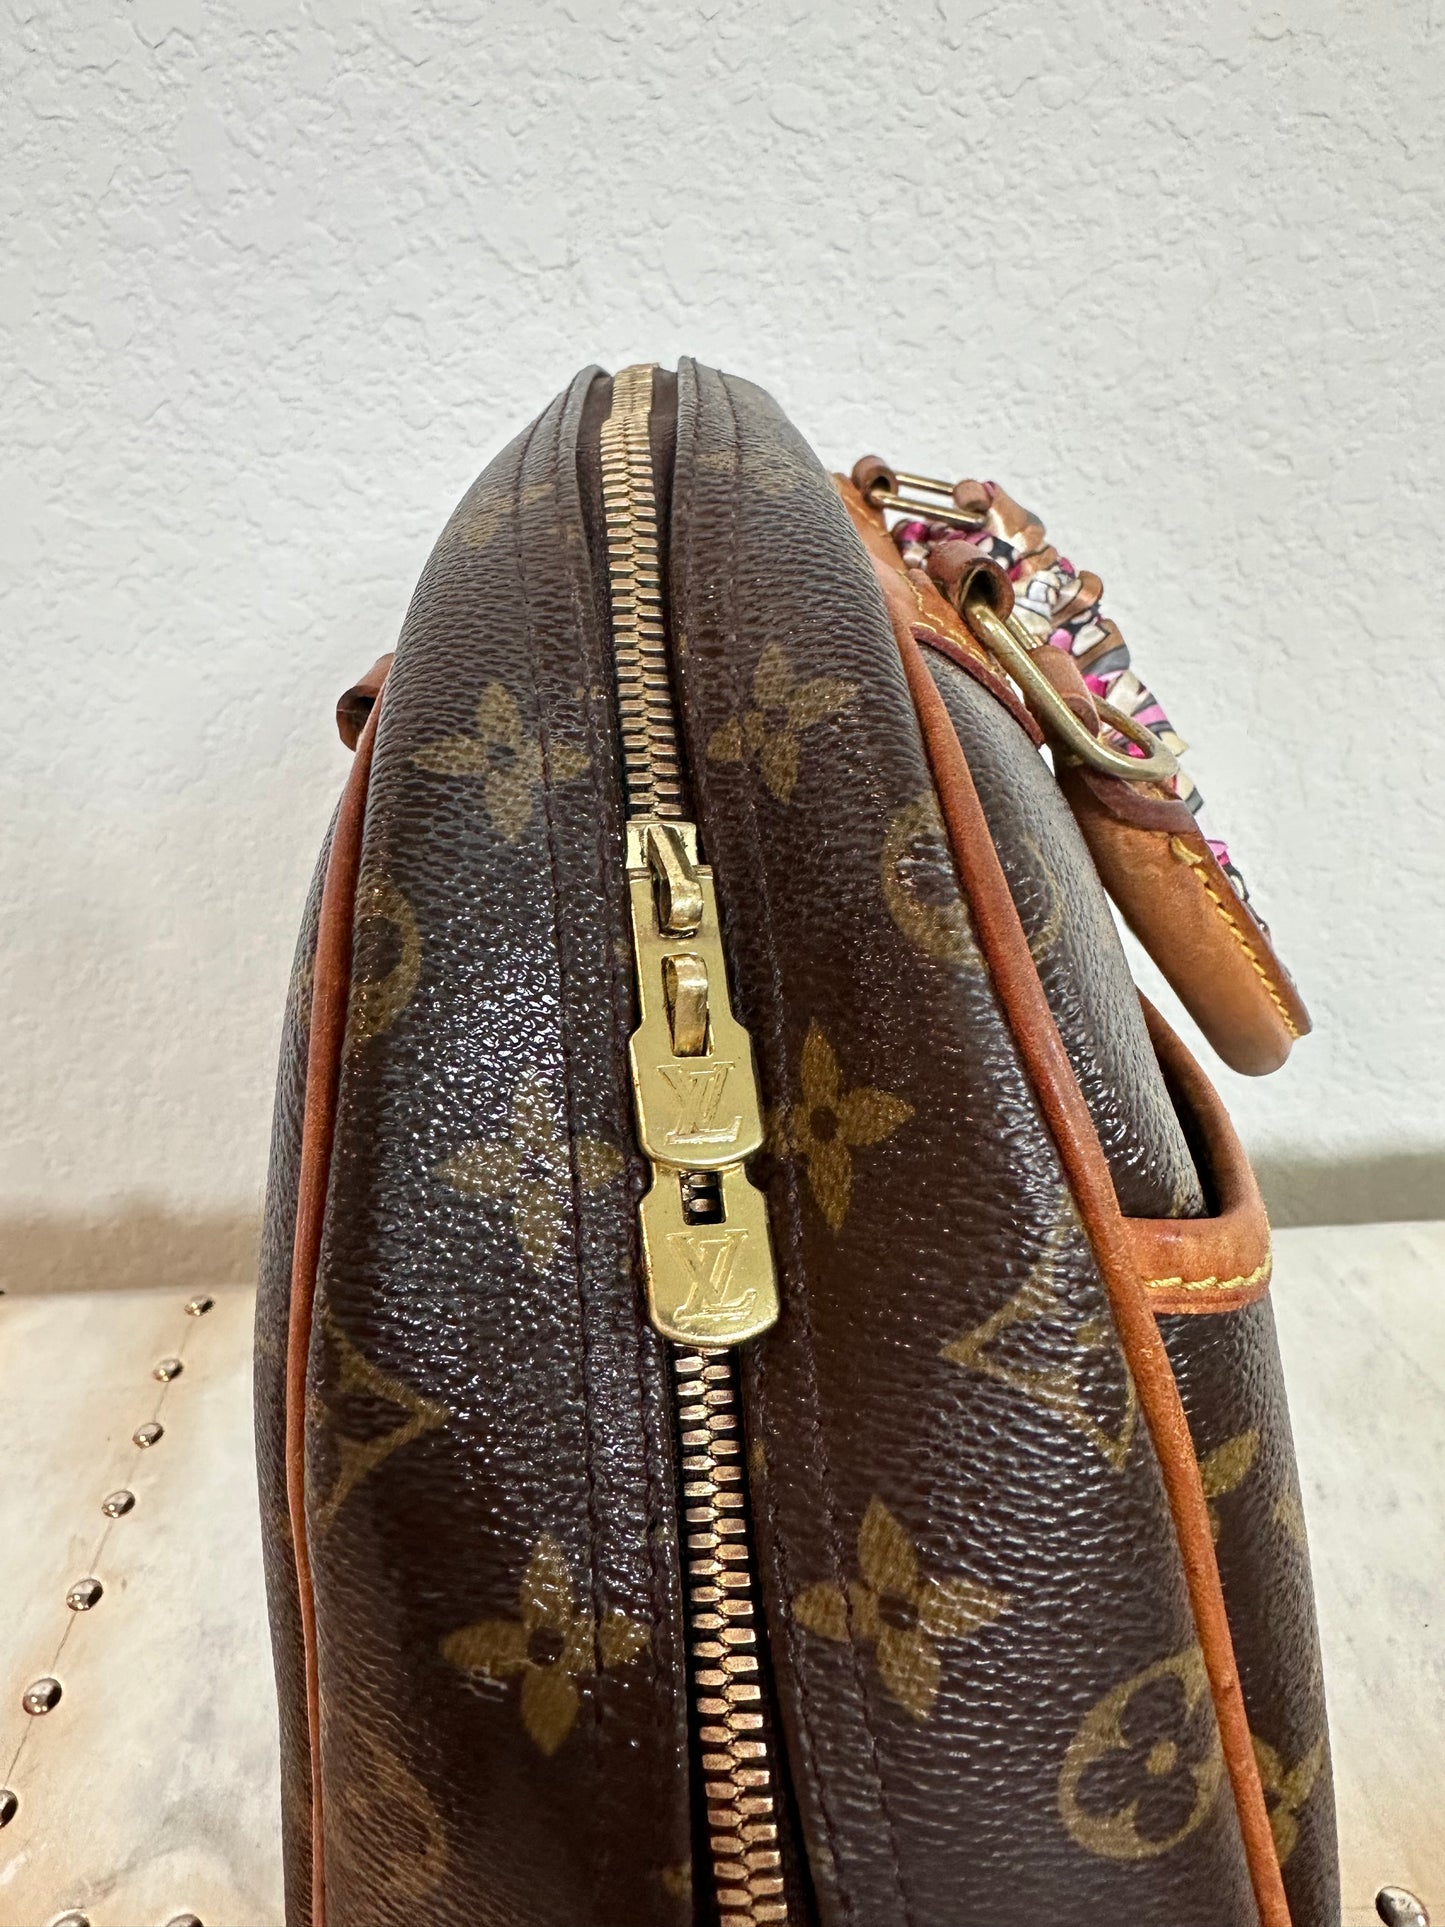 Pre-owned Authentic Louis Vuitton Trouville Monogram Handbag